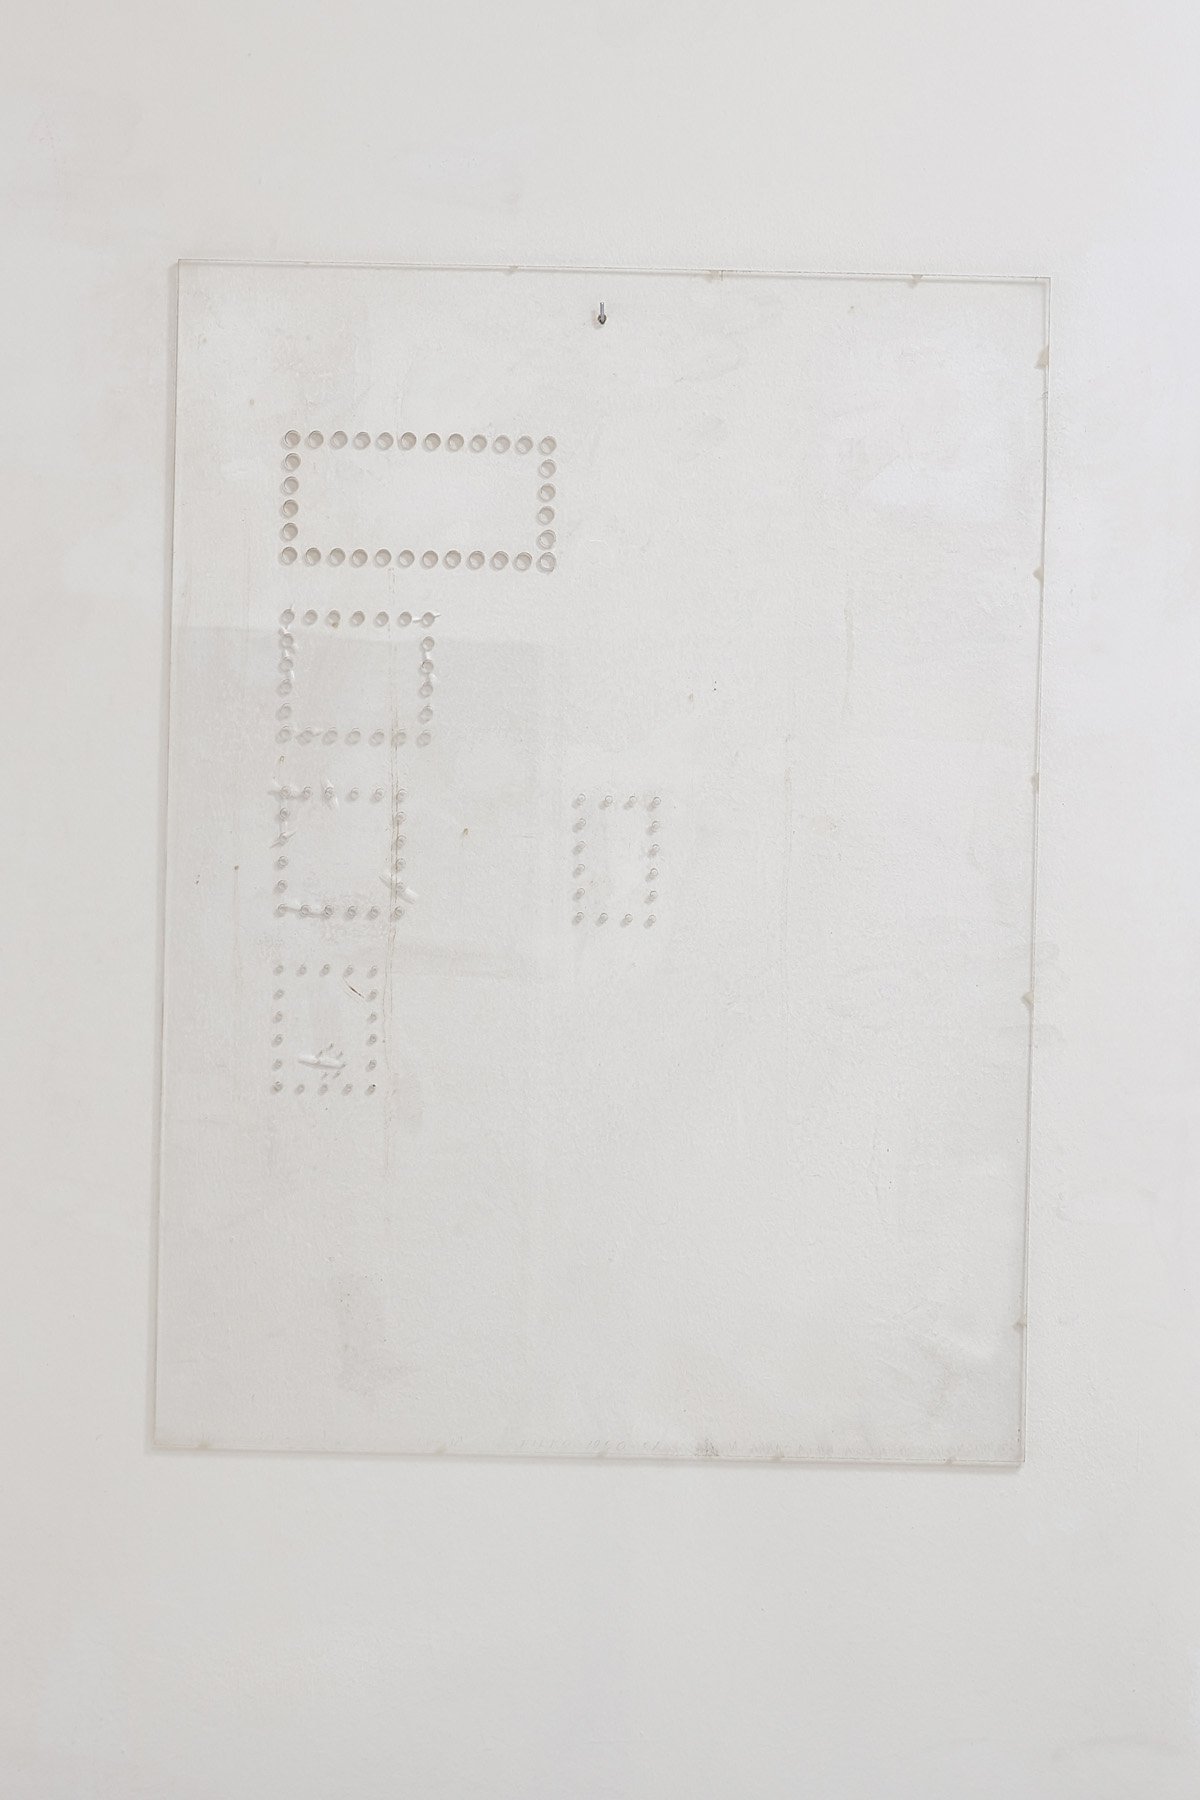 Stano FilkoUntitled, 1970Perforation, plexiglass, 10 piecesEach 100 x 75 cmDetail view